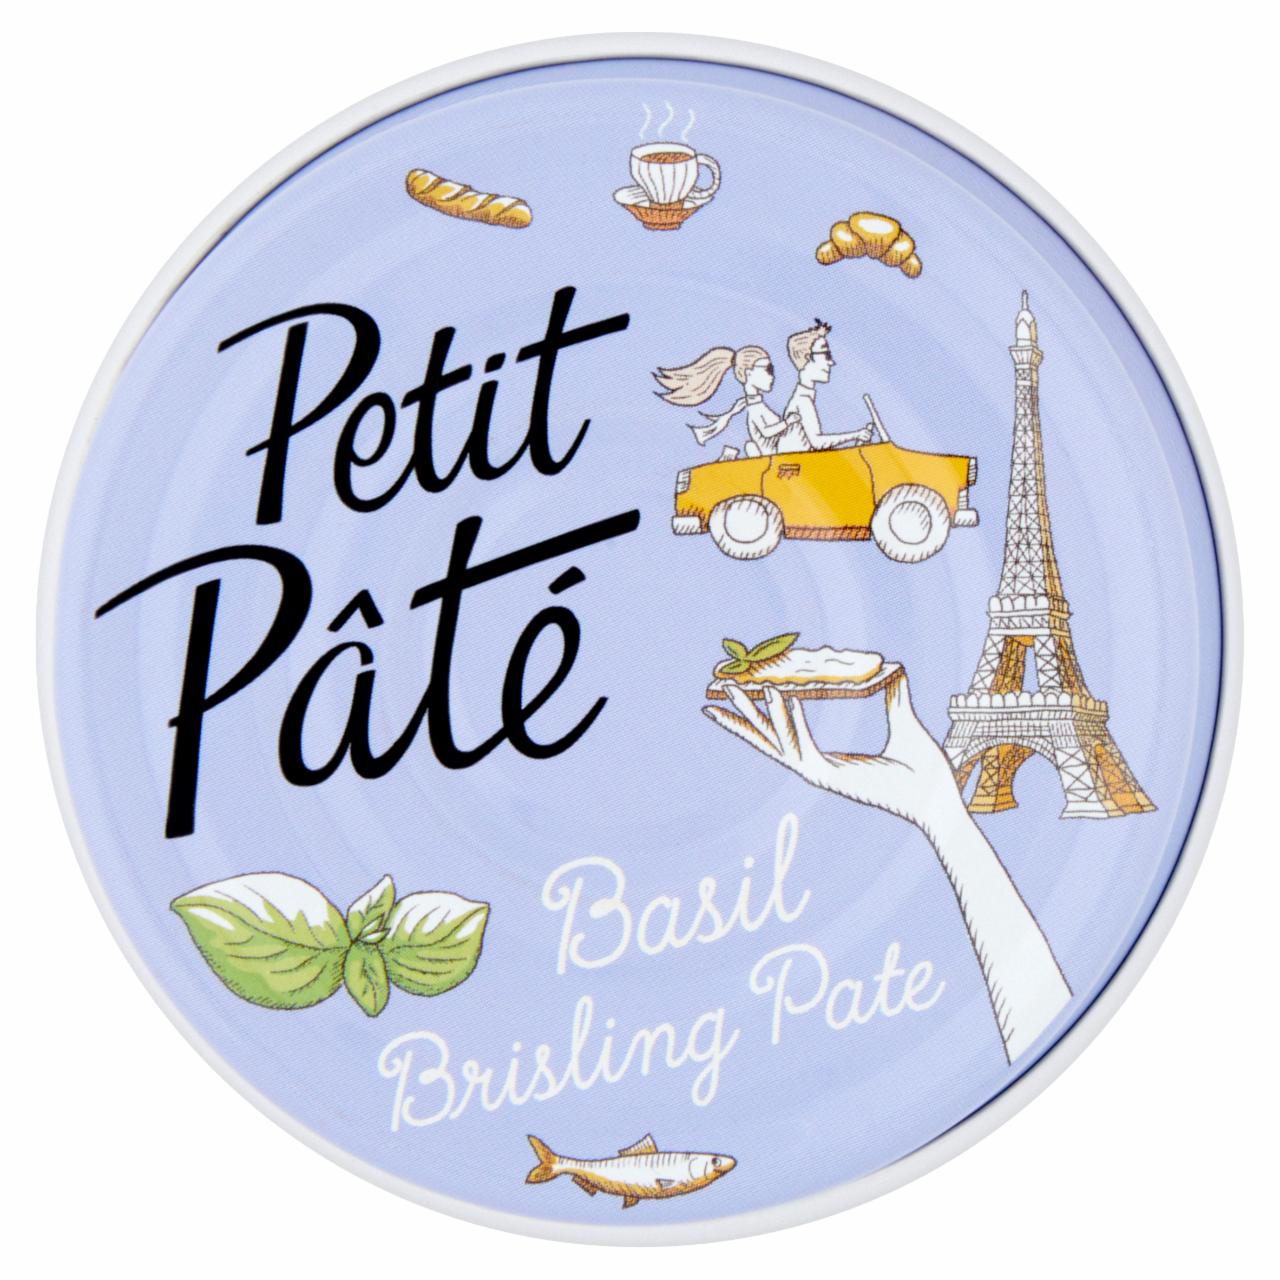 Képek - Petit Pâté bazsalikomos brisling szardínia pástétom 100 g